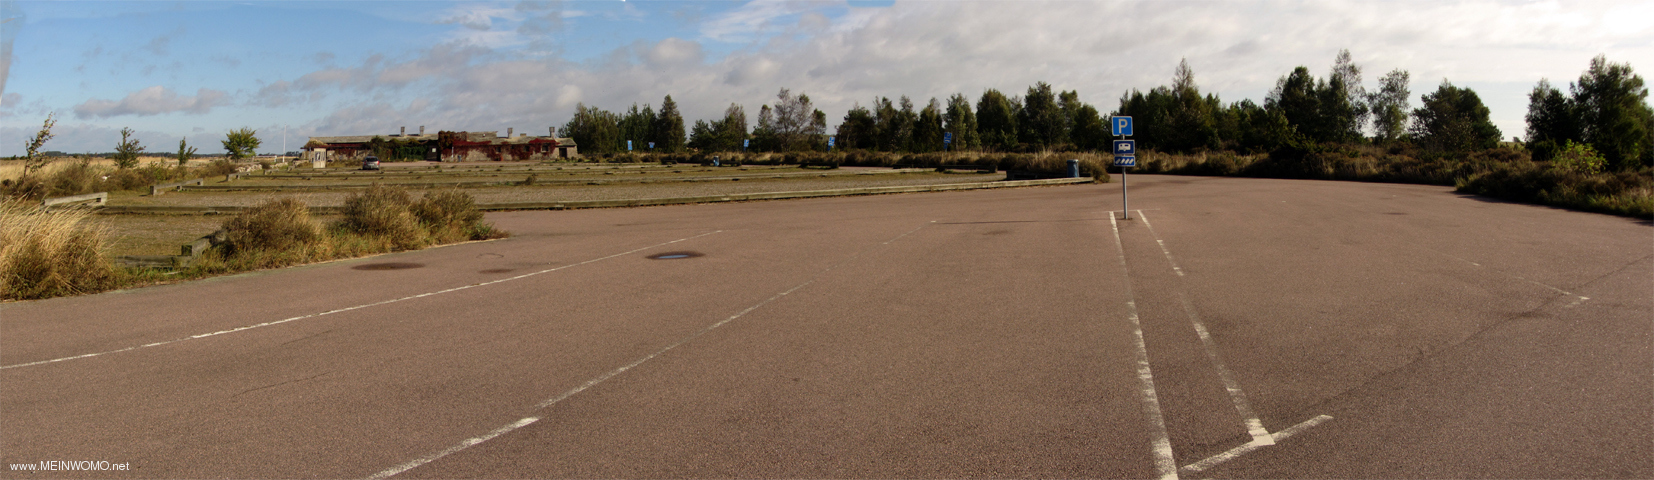  Regardez le grand parking en face de la Eketorpsborg..  En Septembre, nous sommes ici presque seul. ...